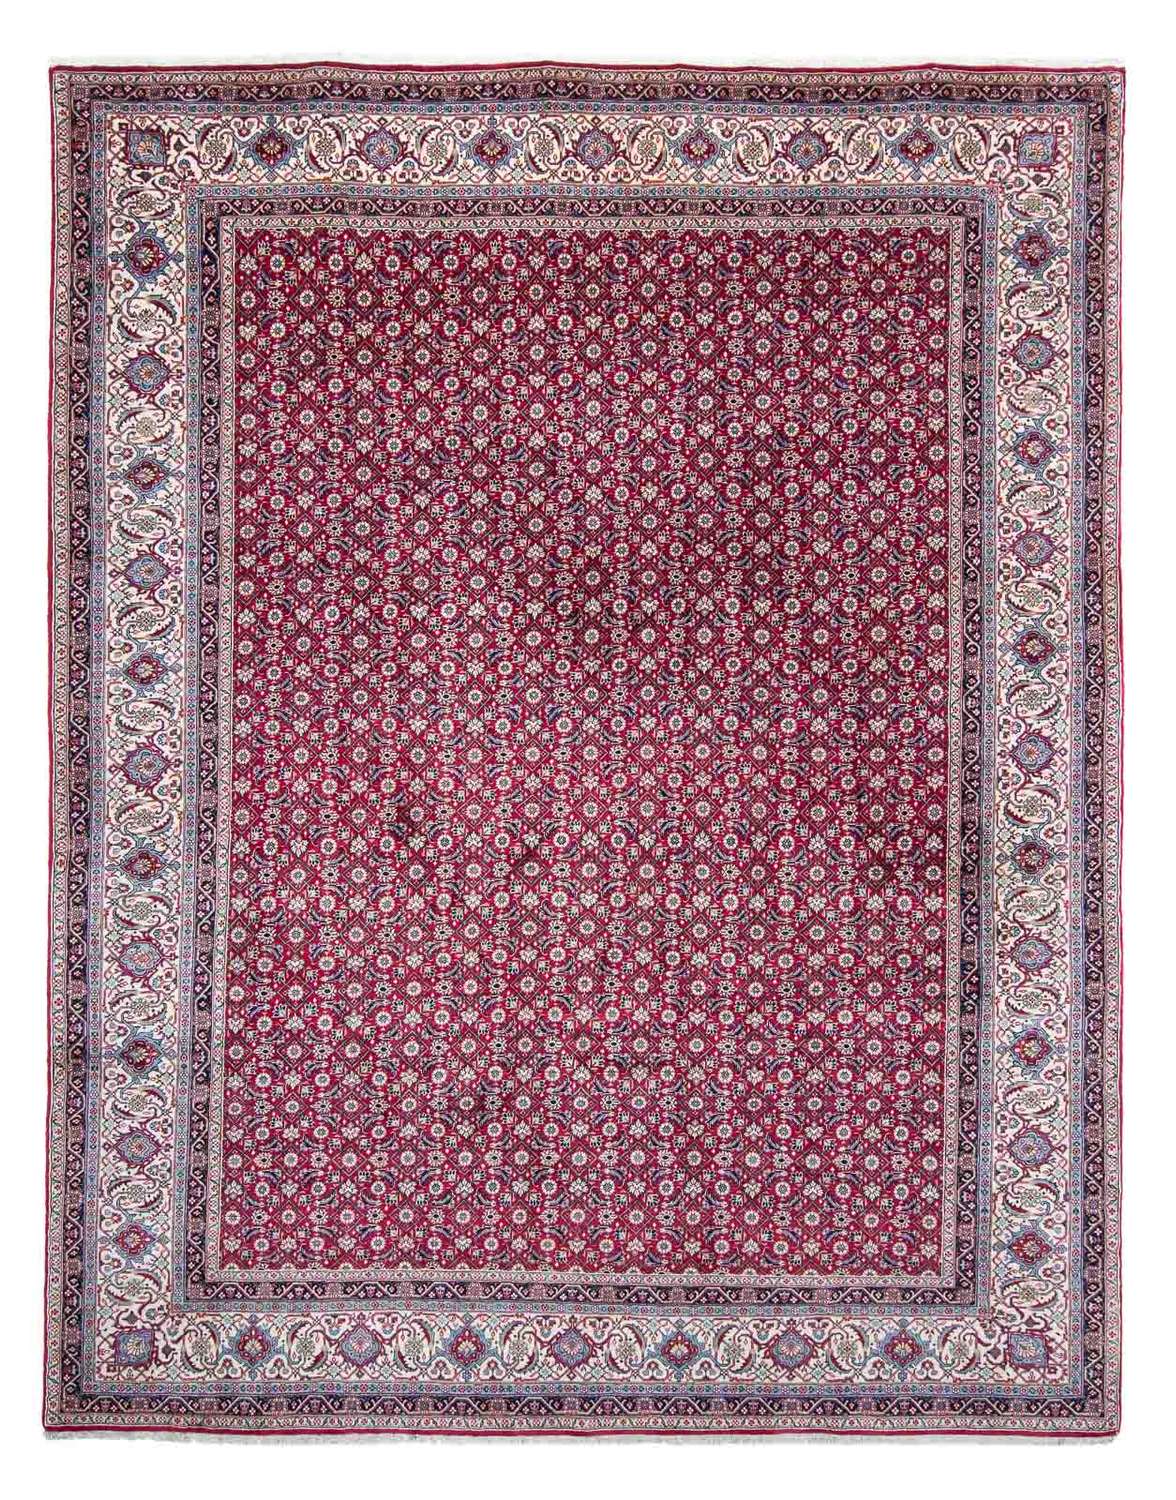 Alfombra persa - Nómada - 328 x 254 cm - rojo